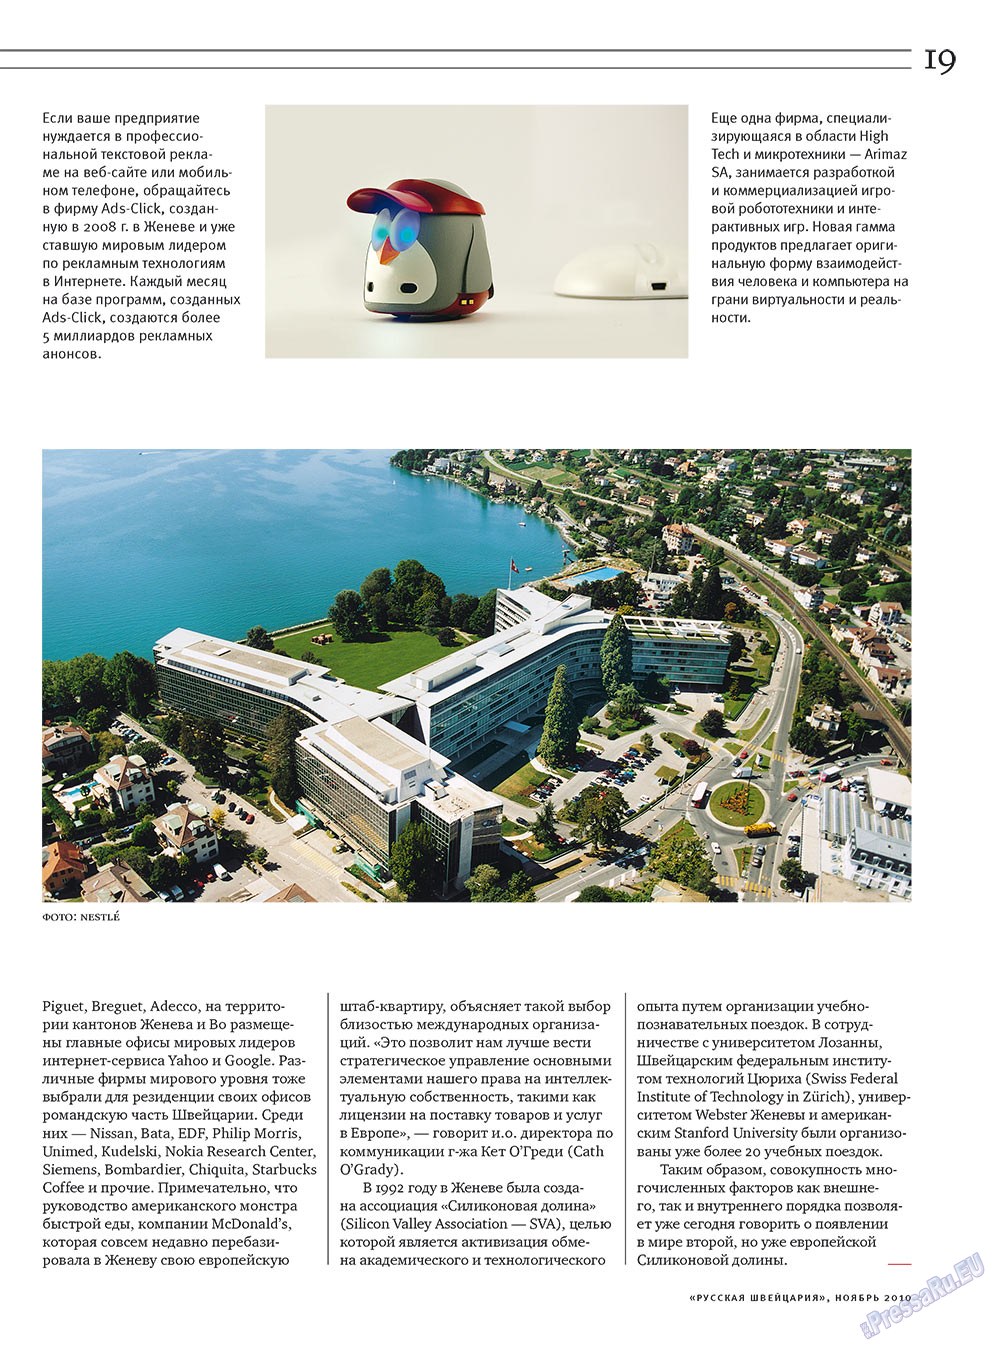 Русская Швейцария, журнал. 2010 №9 стр.19